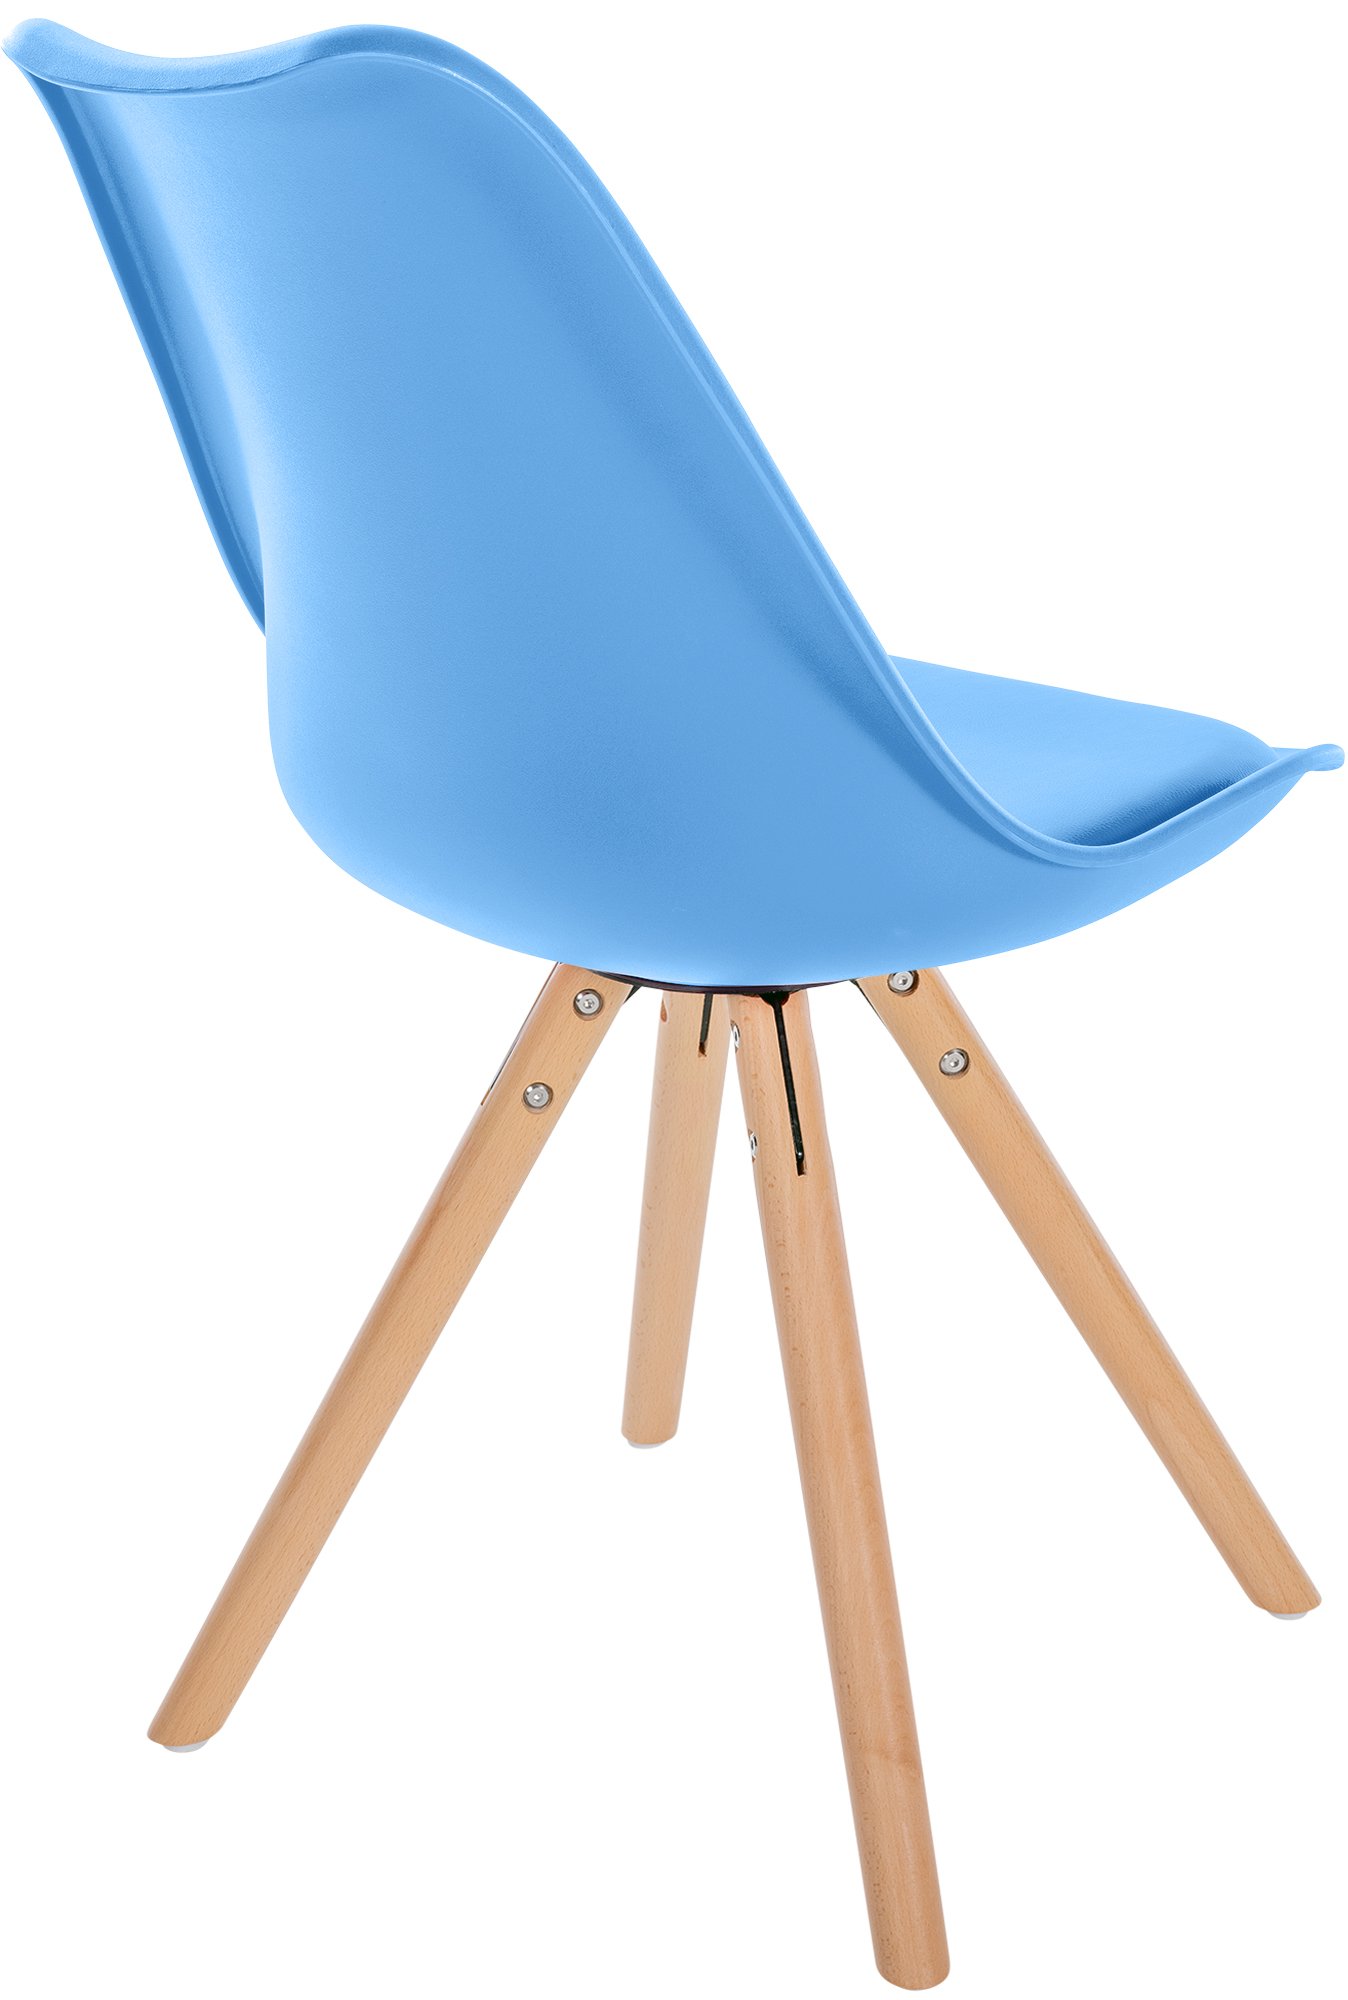 4er Set Stühle Sofia Kunststoff hellblau natura (rund)